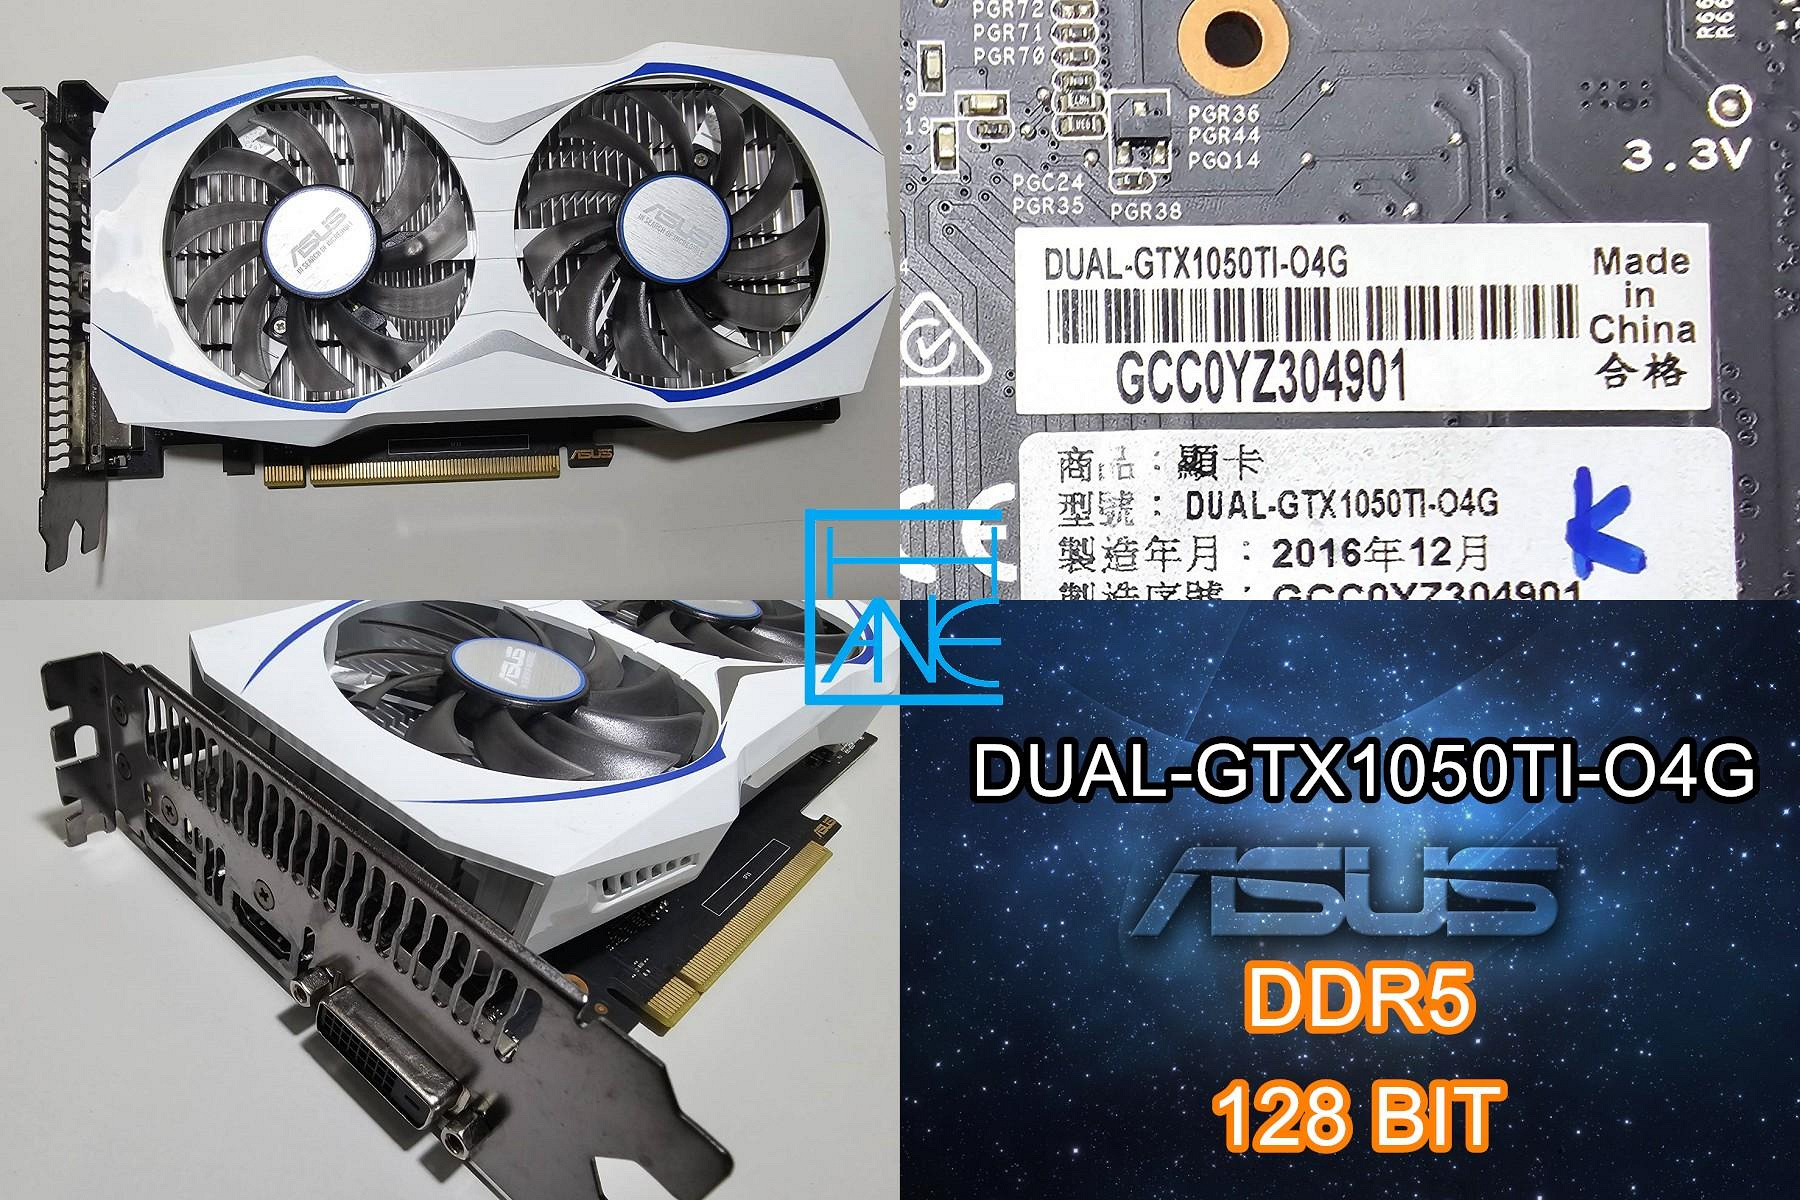 【 大胖電腦 】華碩 DUAL-GTX1050TI-O4G 顯示卡/DDR5/128BIT/保固30天/直購價1300元